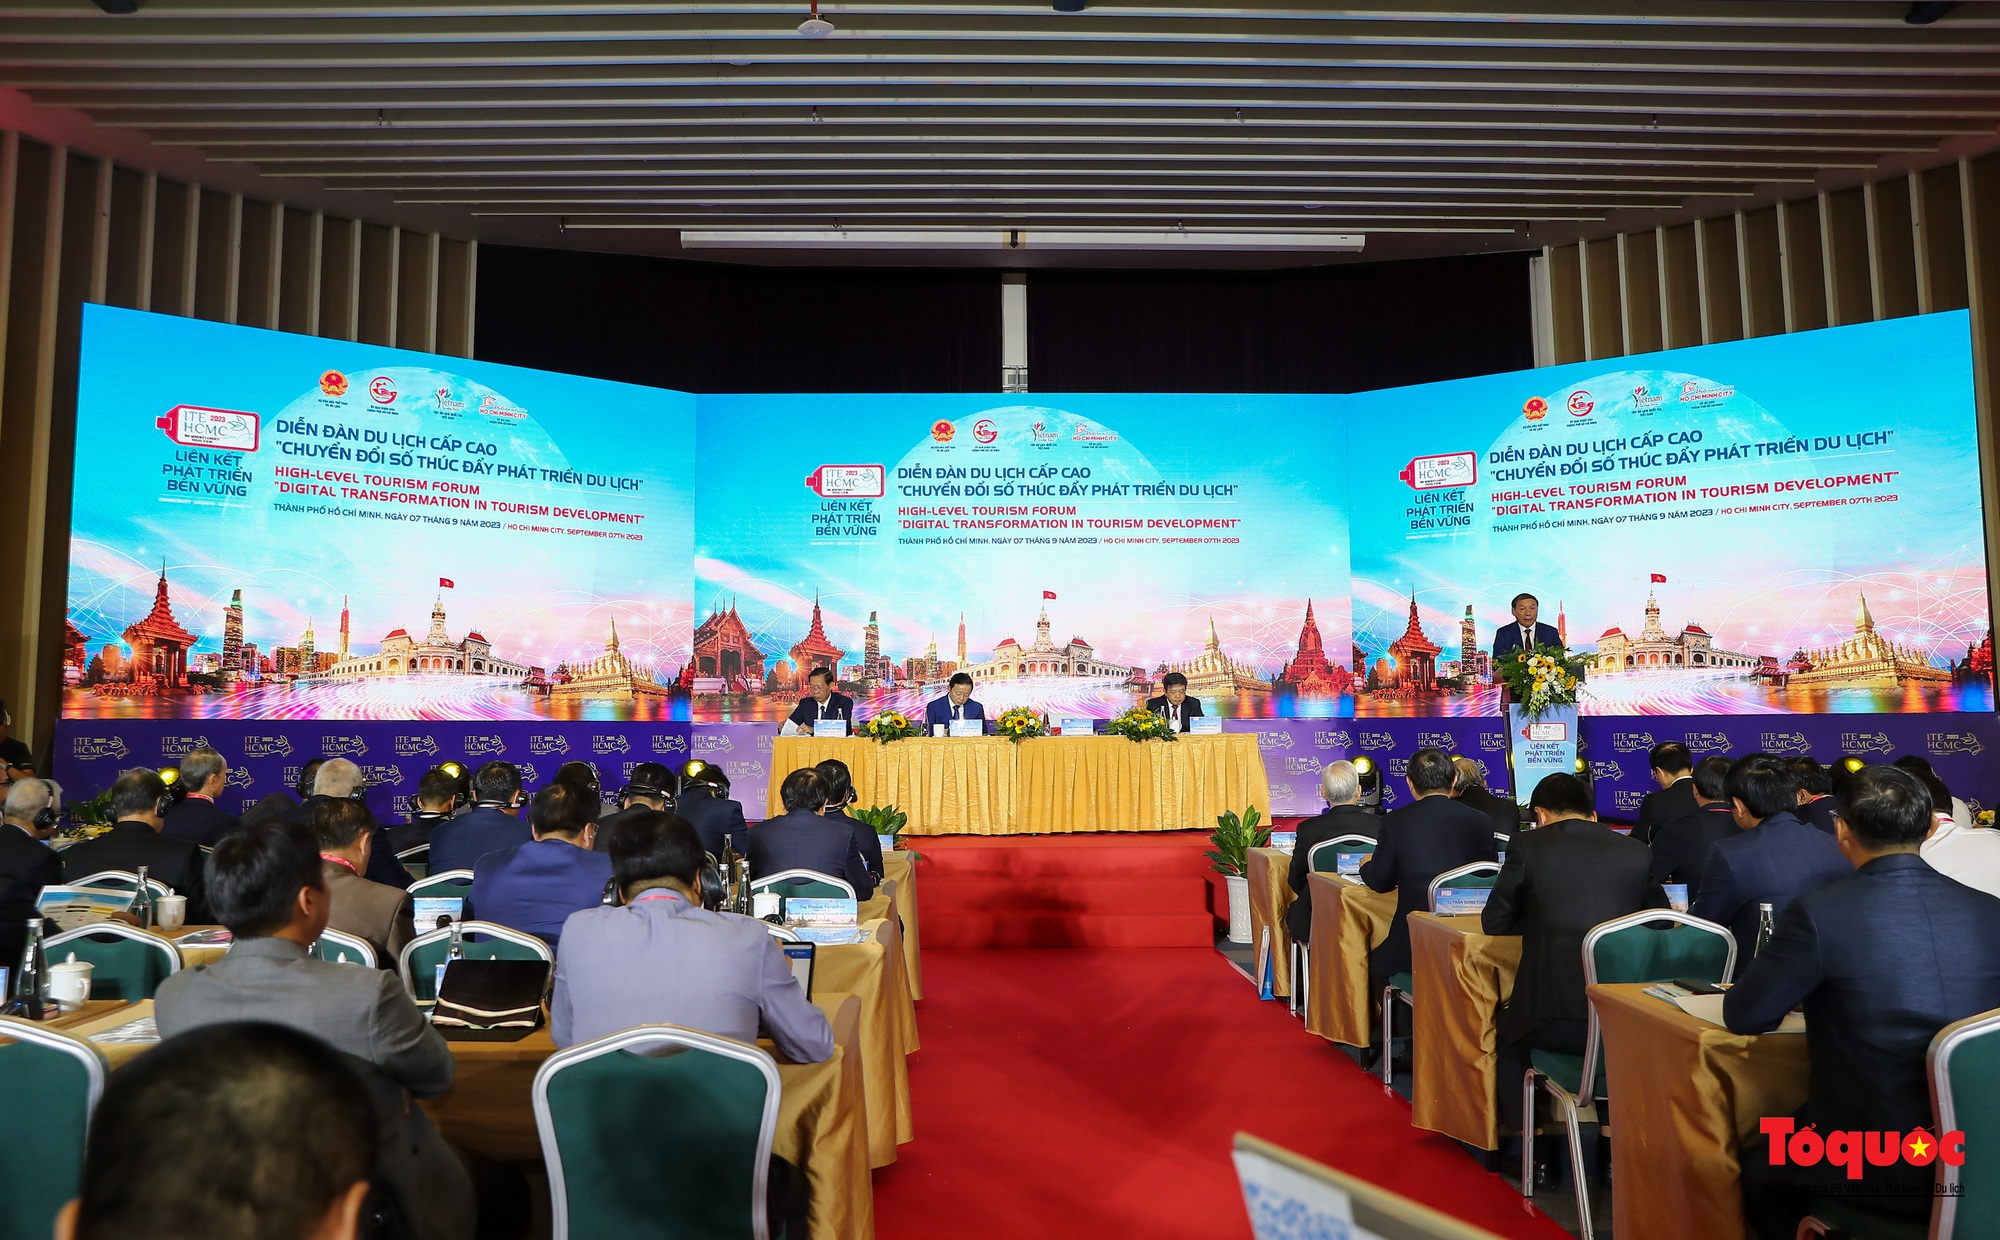 Chùm ảnh: Khai mạc Hội chợ Du lịch Quốc tế TP Hồ Chí Minh lần thứ 17 - Ảnh 16.